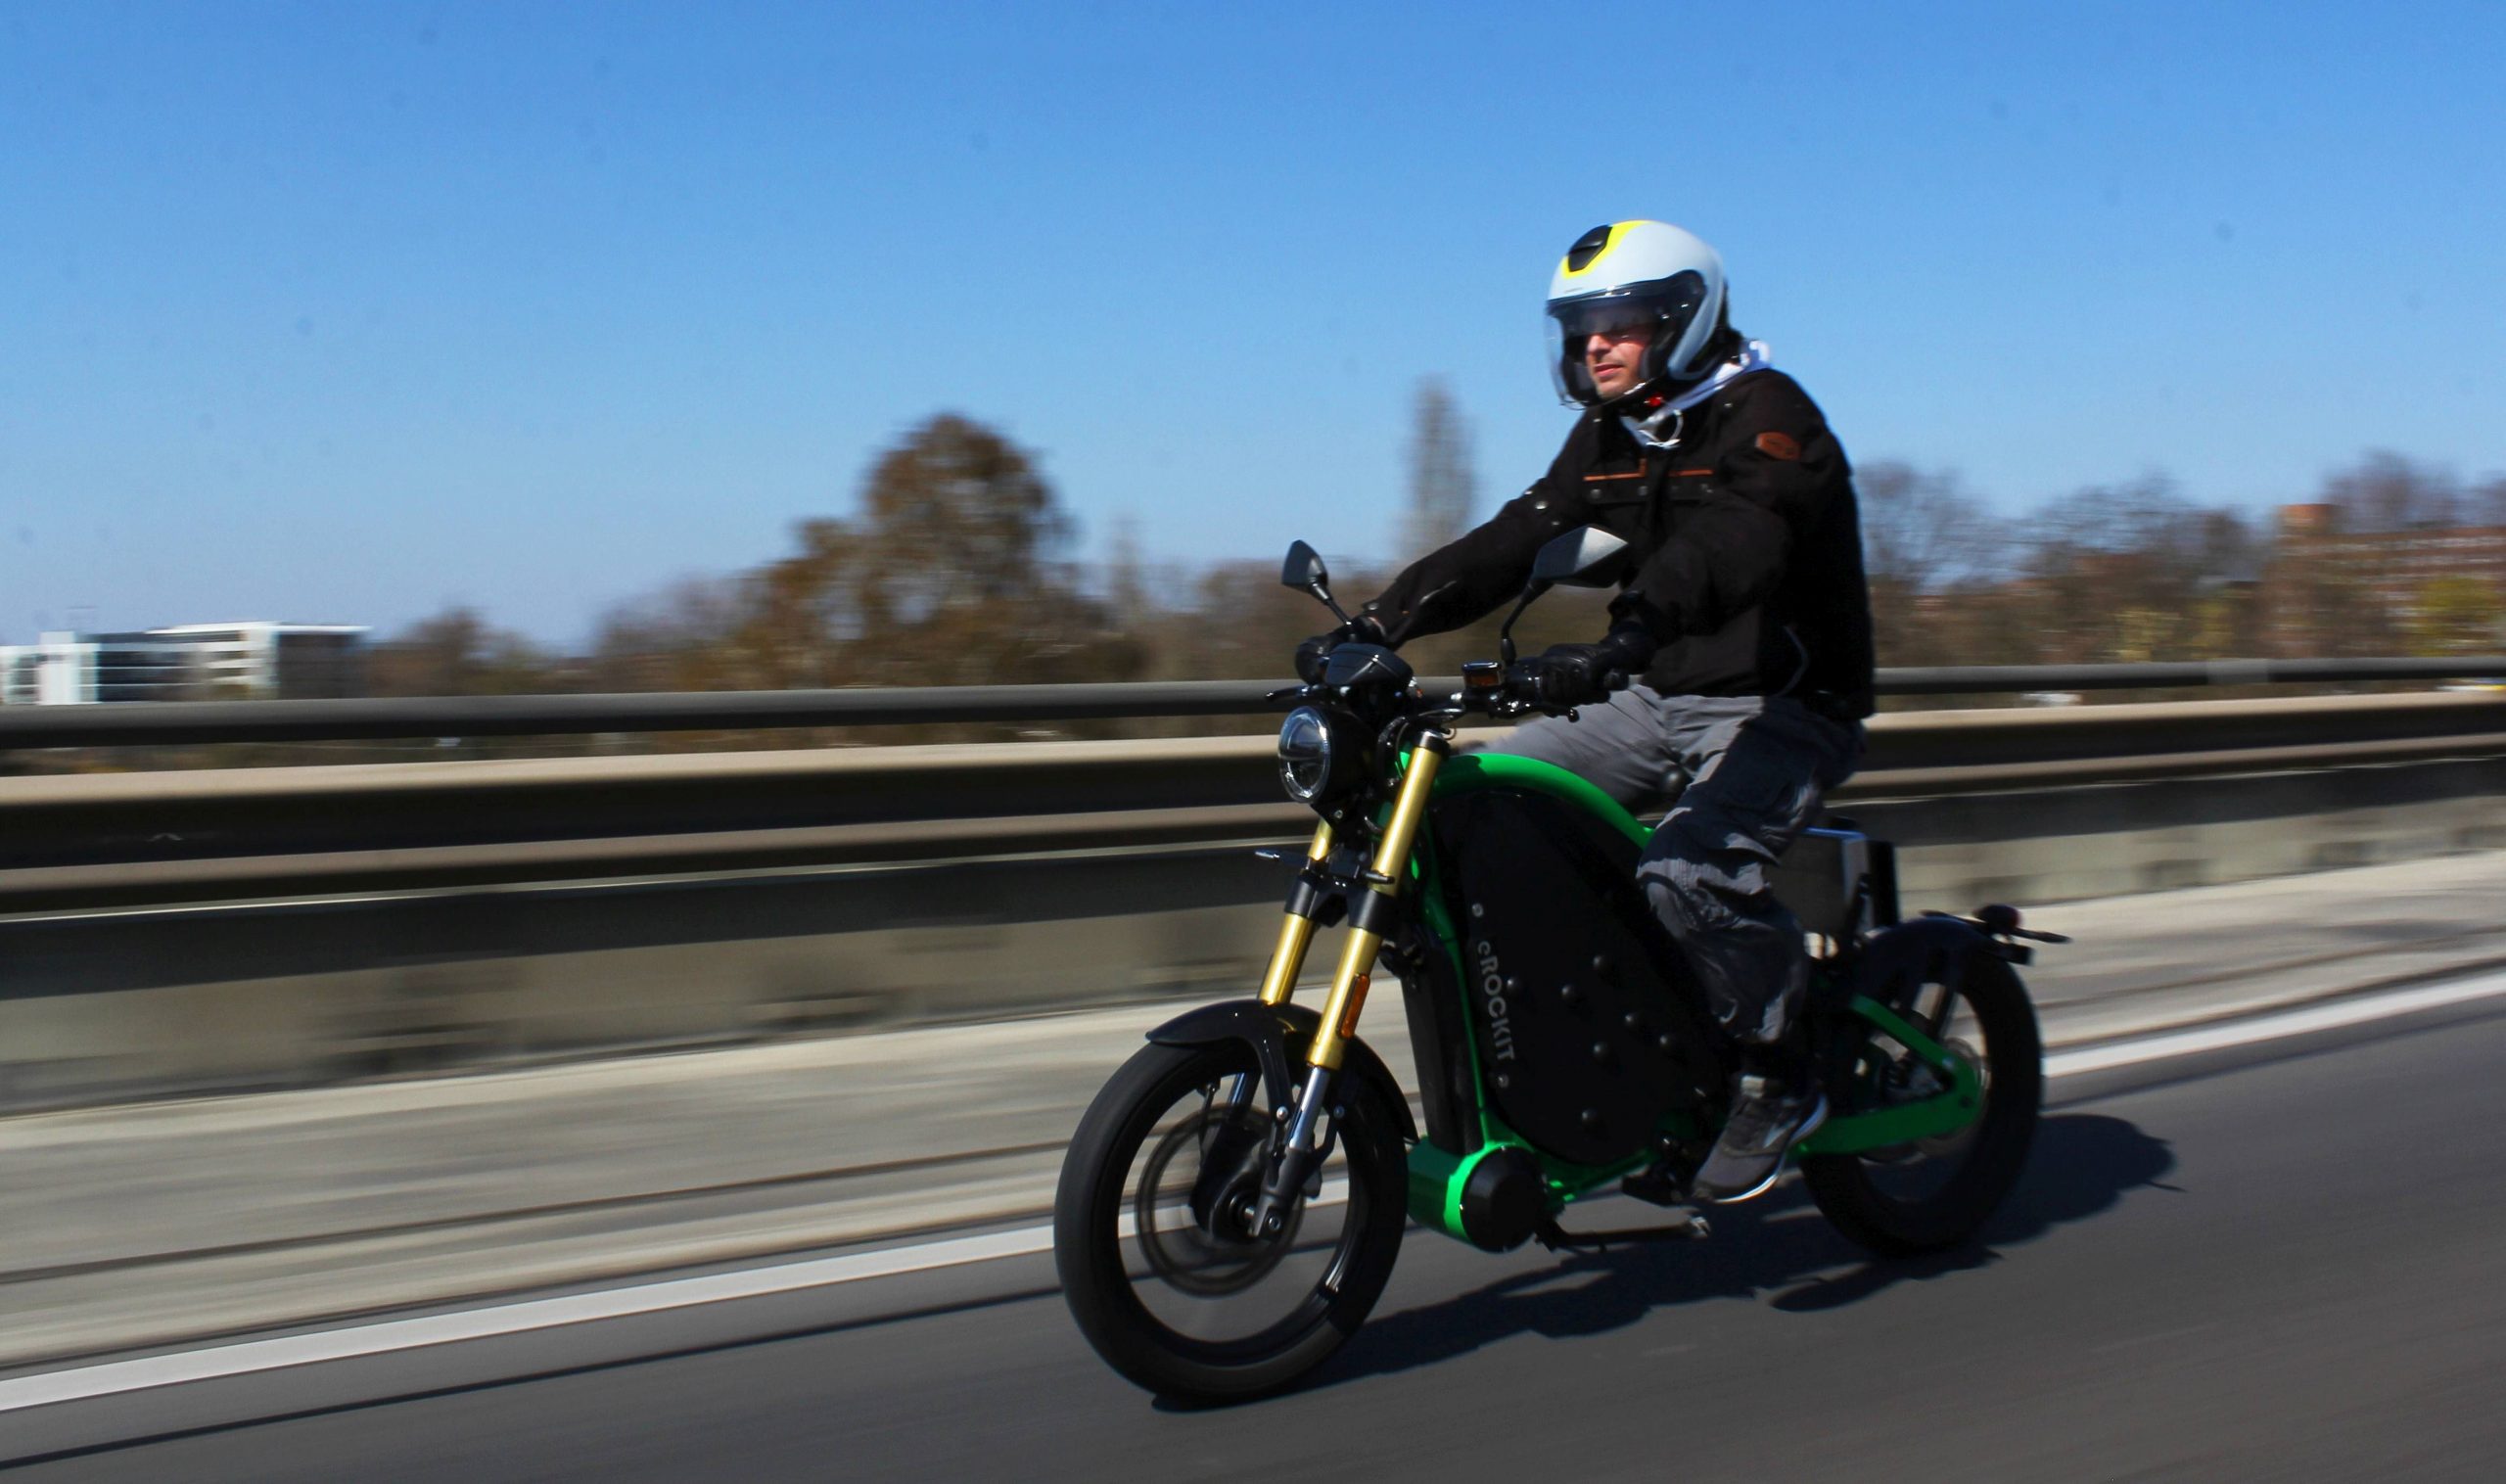 Neues E-Bike eRockit darf mit 100 km/h sogar auf die Autobahn